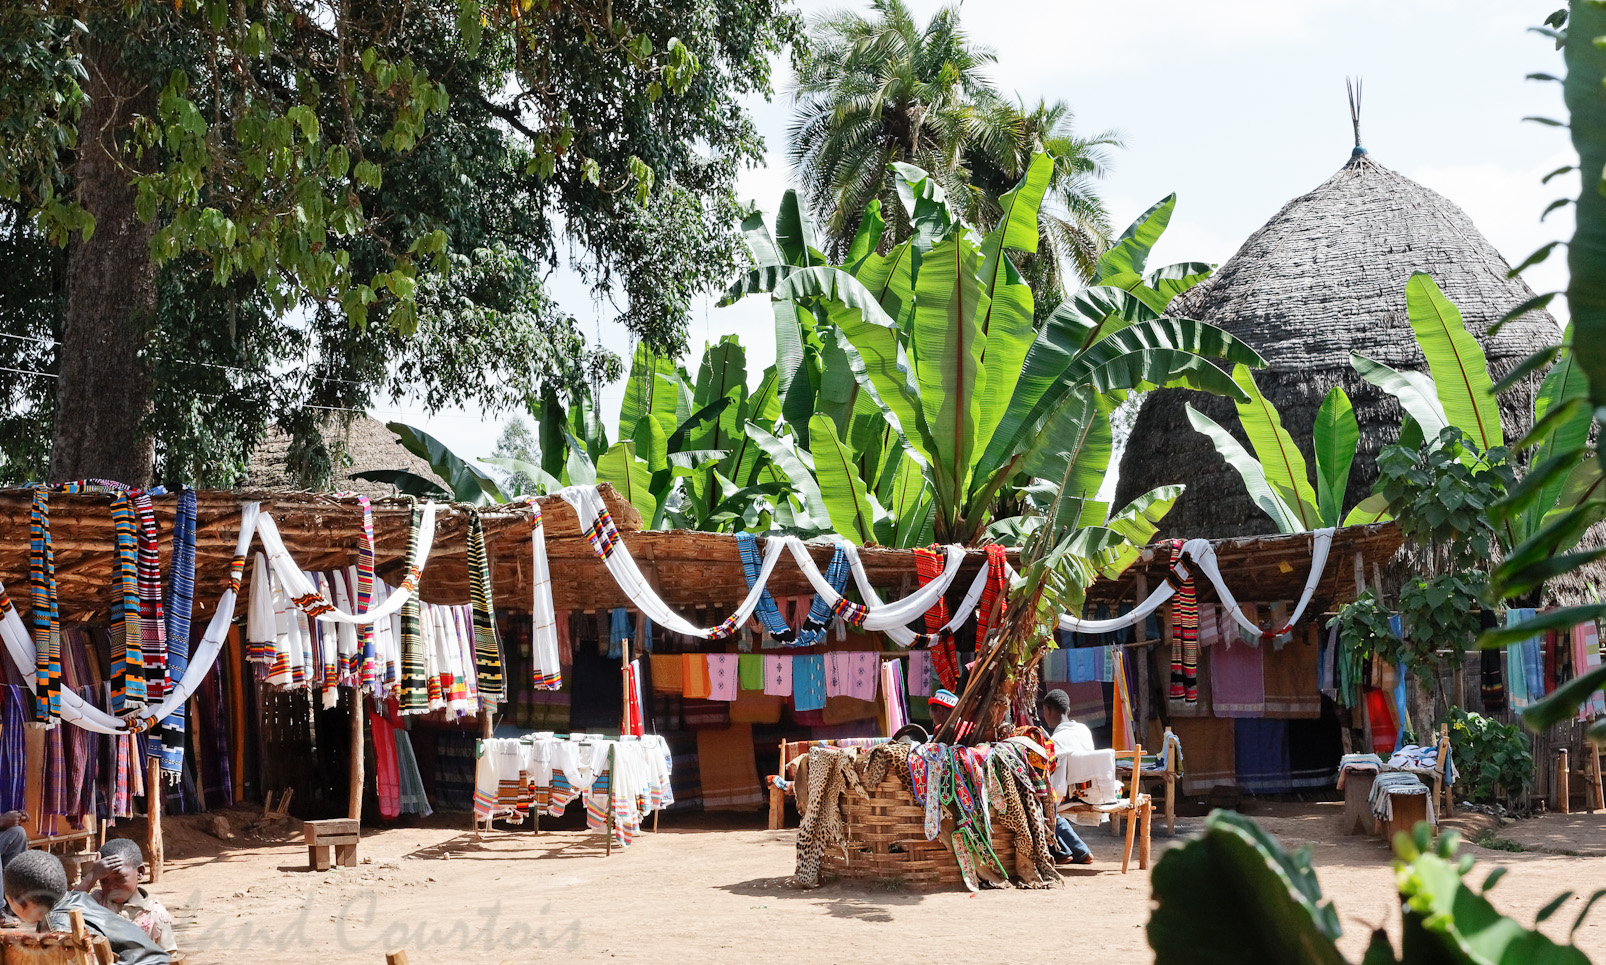 Village Dorze. Chambres d'hôte et marché artisanal.